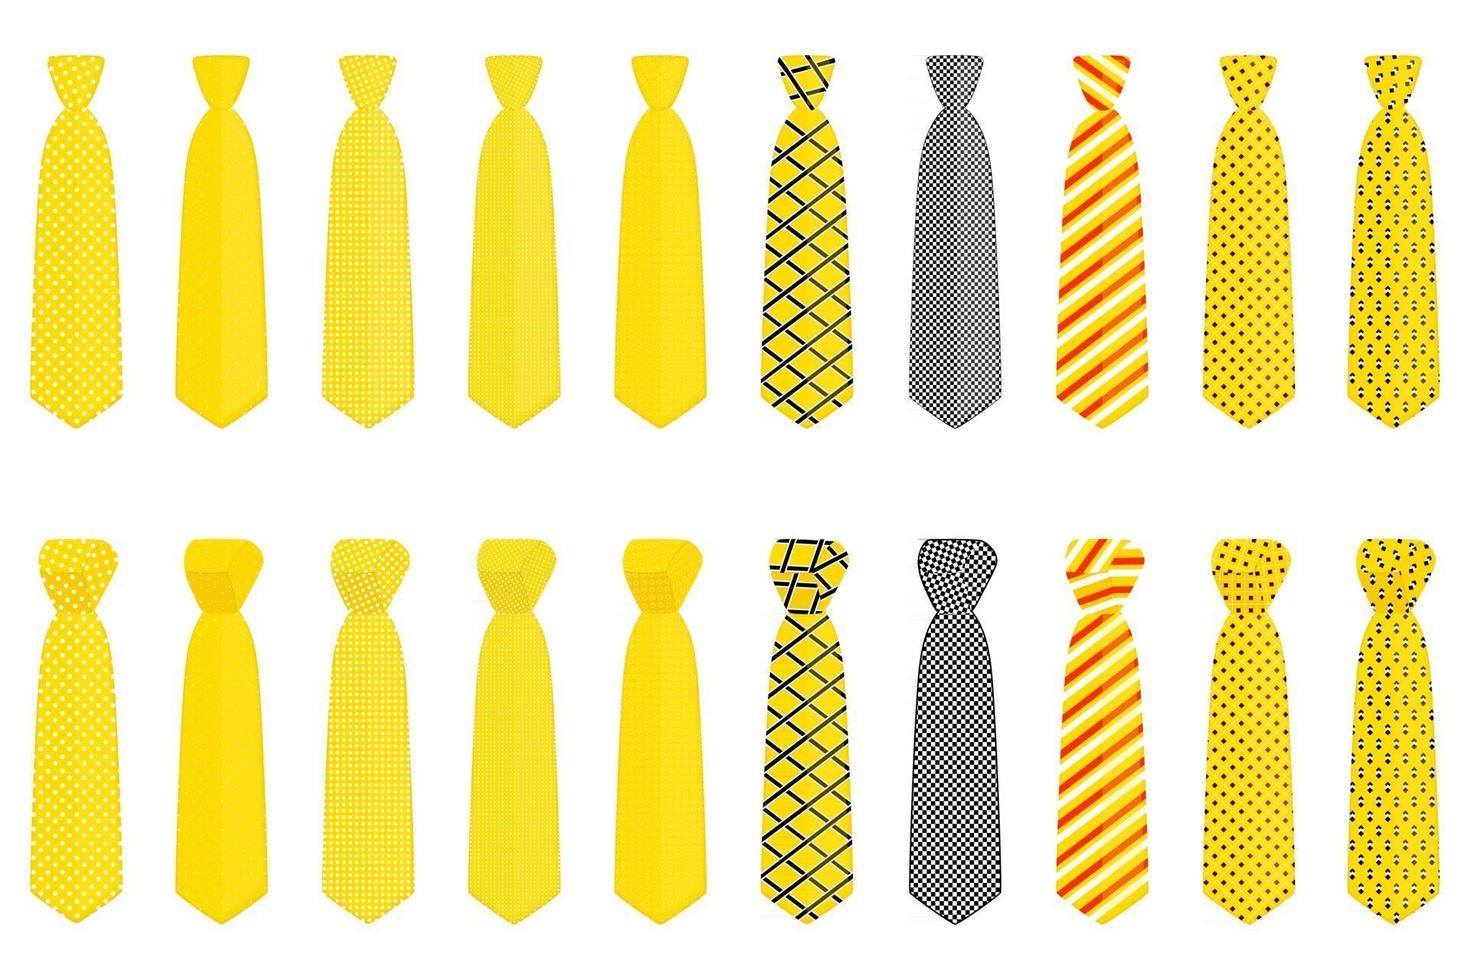 gran conjunto de corbatas de diferentes tipos, corbatas de varios tamaños vector